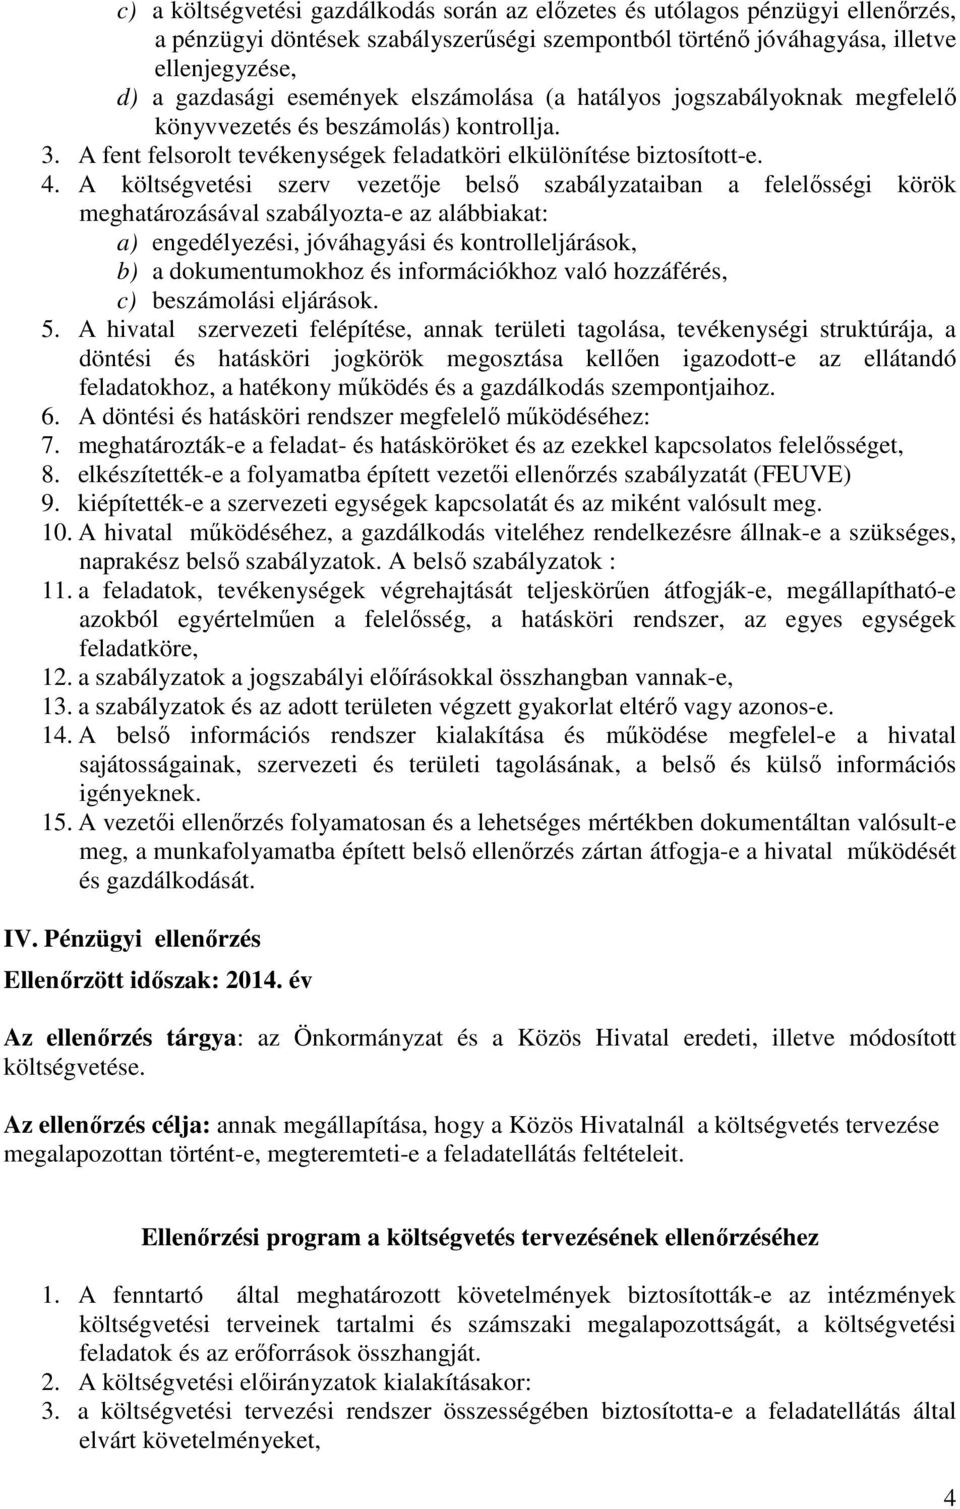 A költségvetési szerv vezetıje belsı szabályzataiban a felelısségi körök meghatározásával szabályozta-e az alábbiakat: a) engedélyezési, jóváhagyási és kontrolleljárások, b) a dokumentumokhoz és